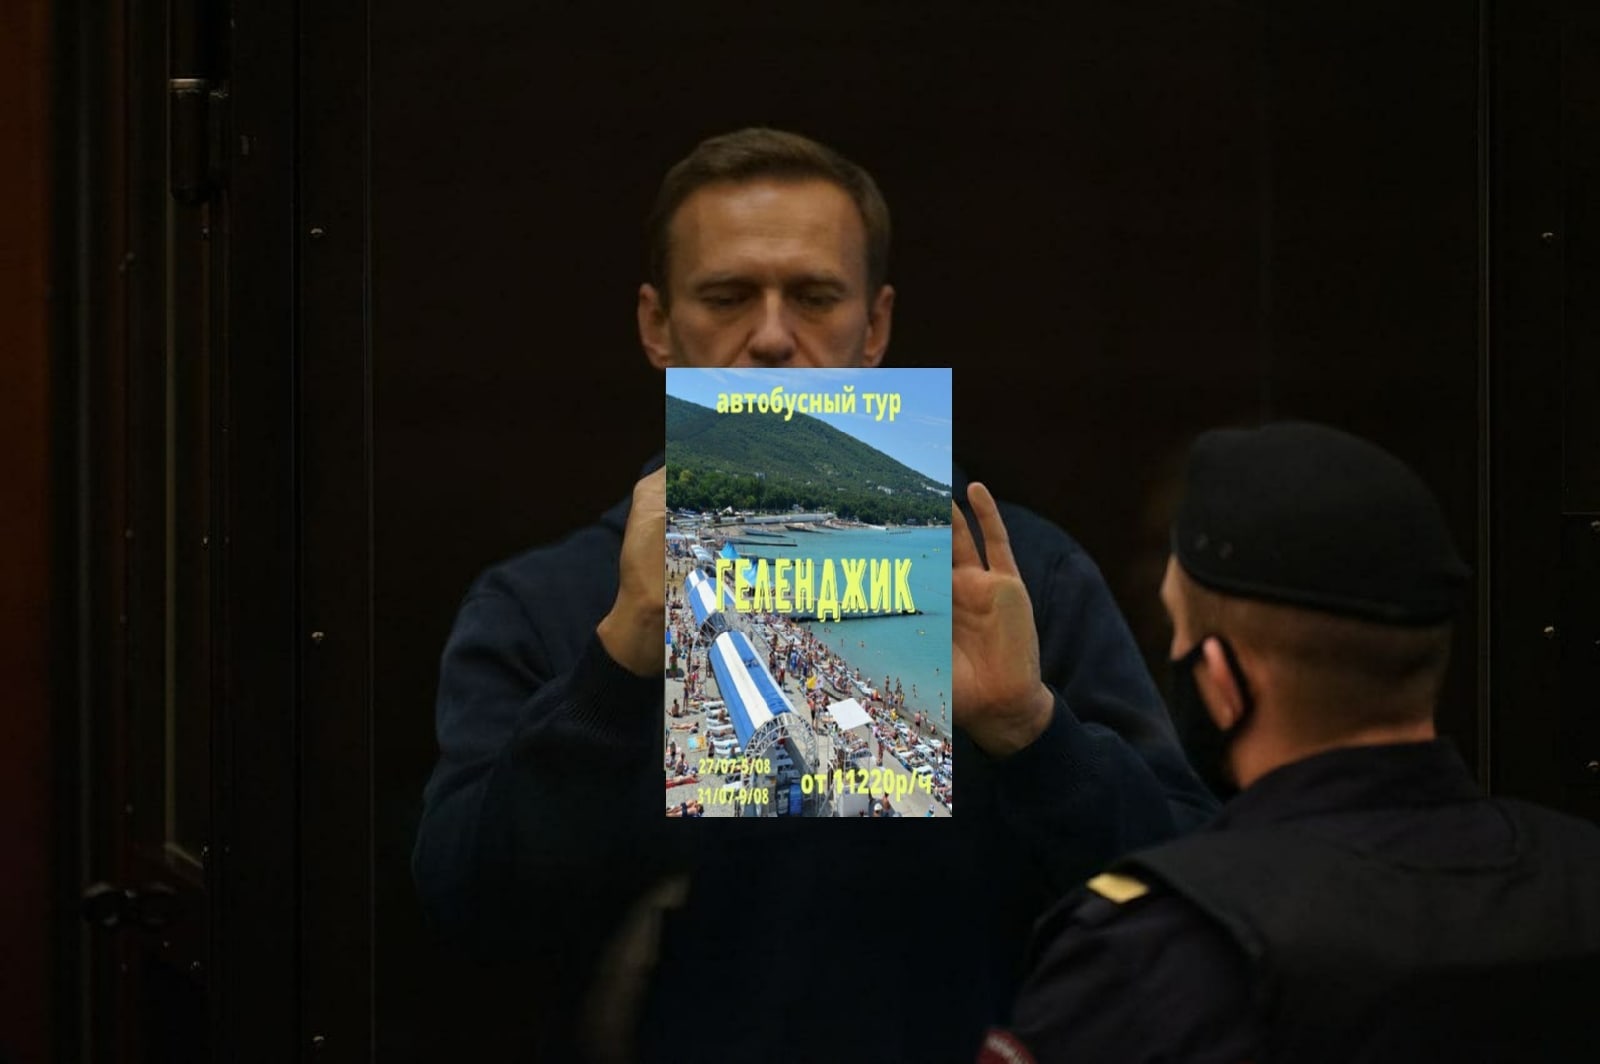 Навальный мемы